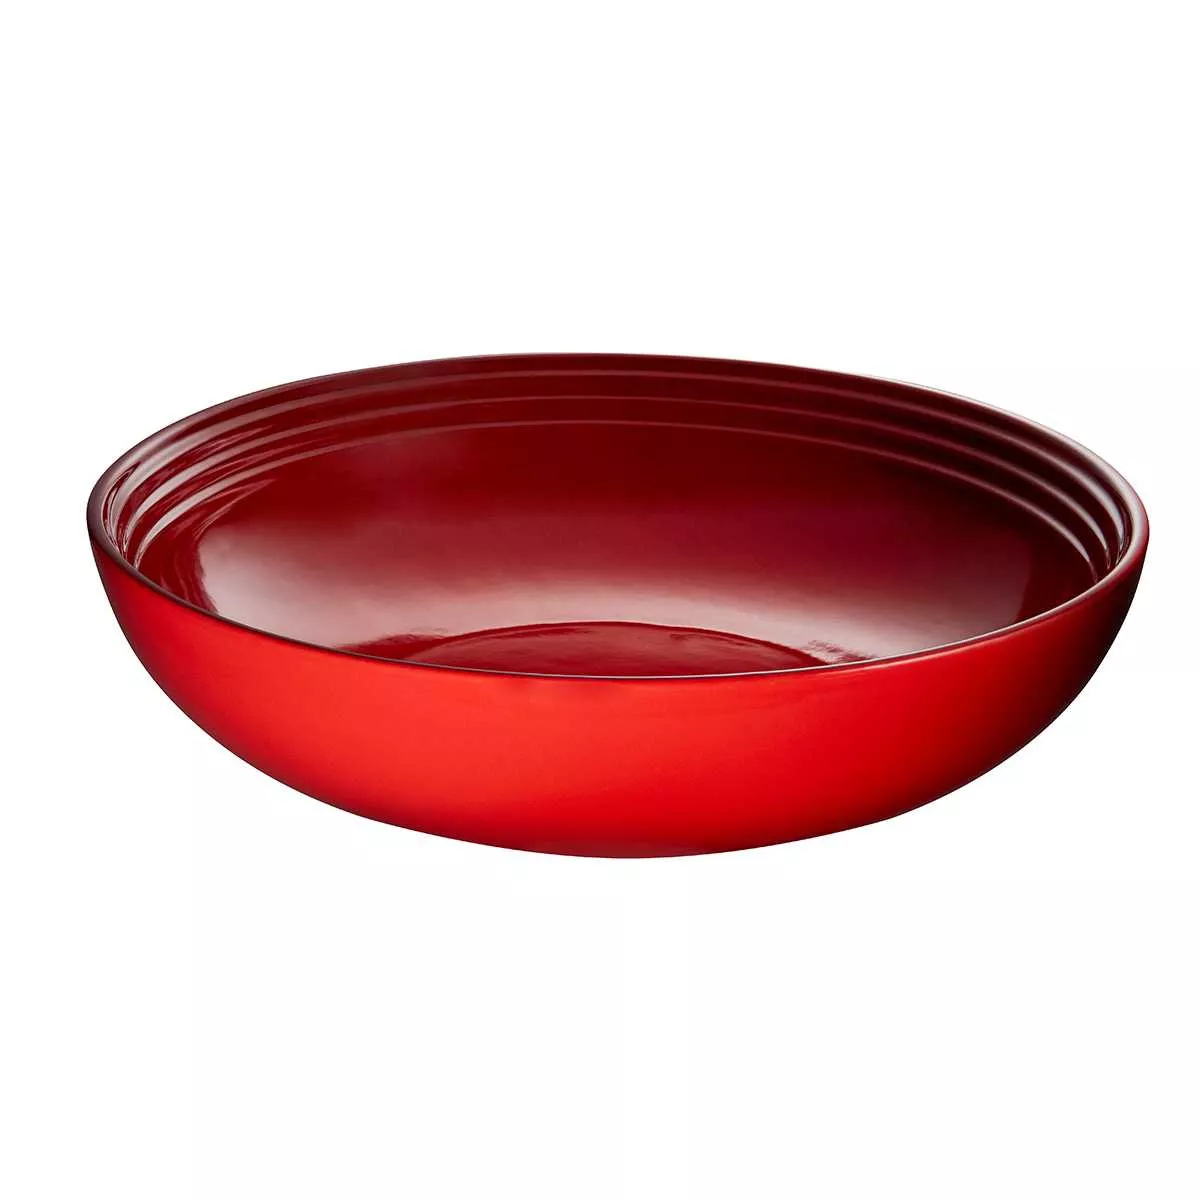 Салатник Le Creuset Branded Cherry Red, диаметр 32 см (91059613060099) - Фото nav 2